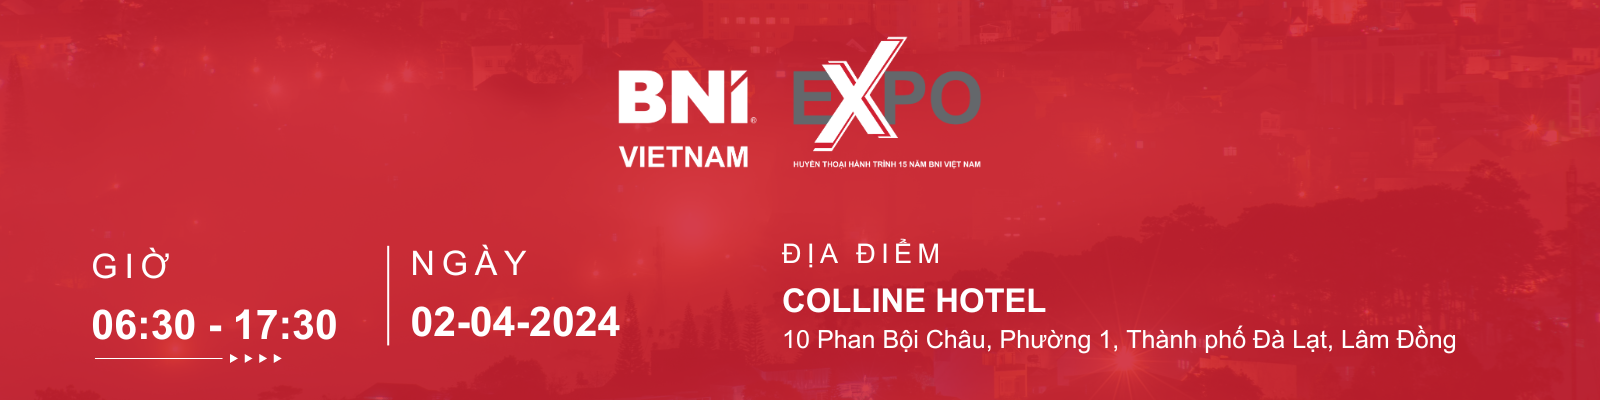 BNI Expo Đà Lạt ngày 02.04.2024